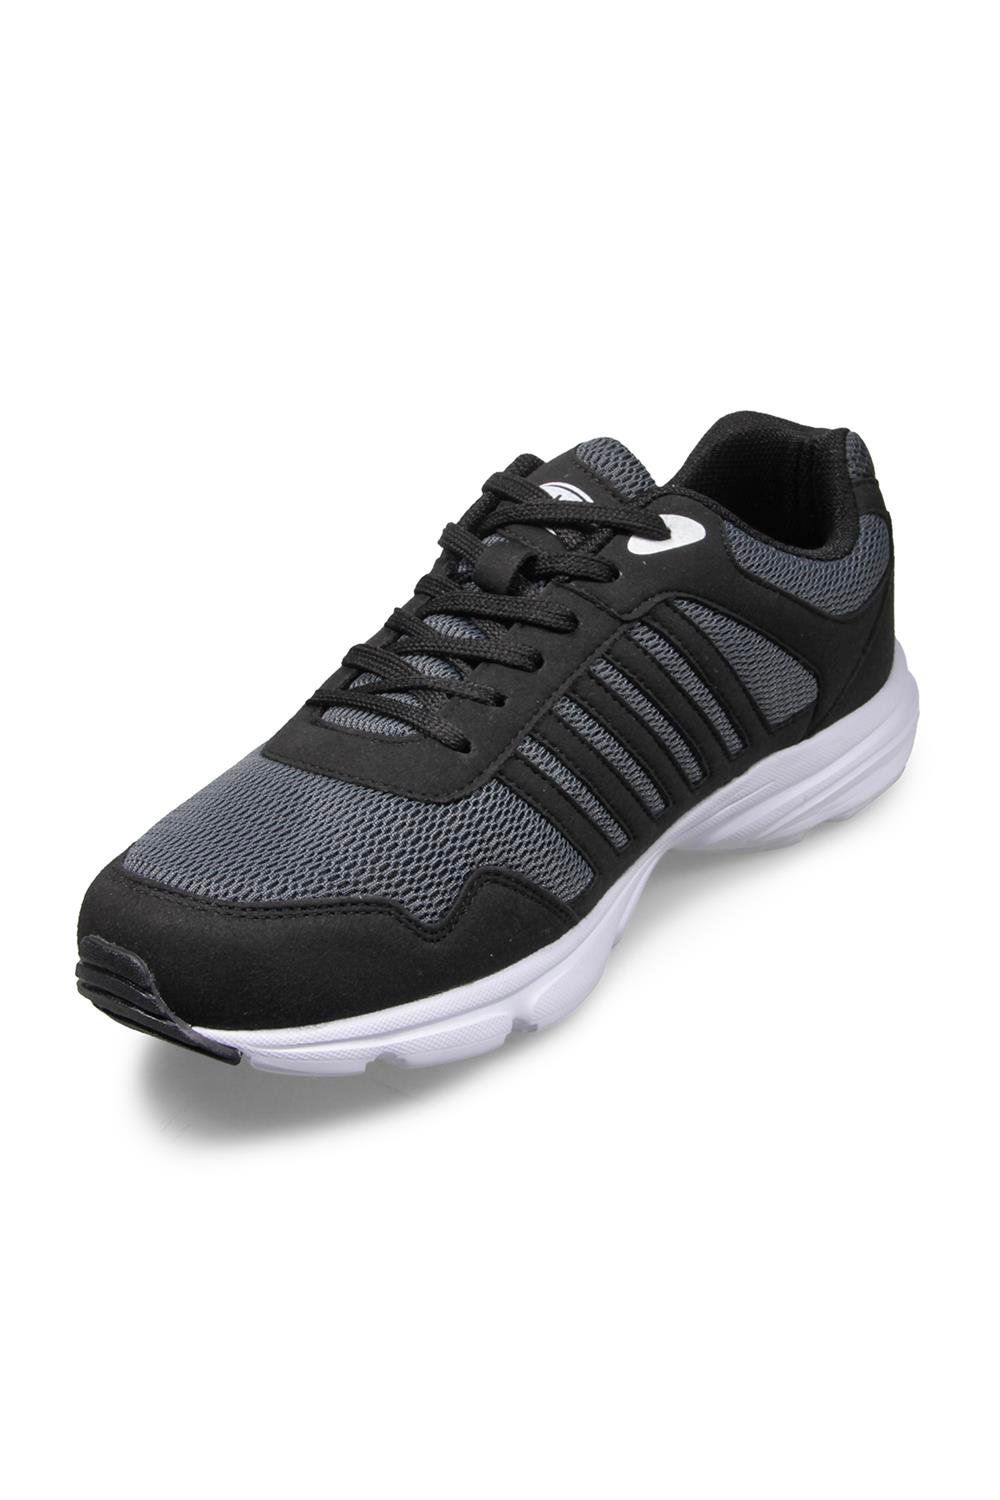 Erkek Gri-siyah Running Ayakkabı Modelleri ve Fiyatları